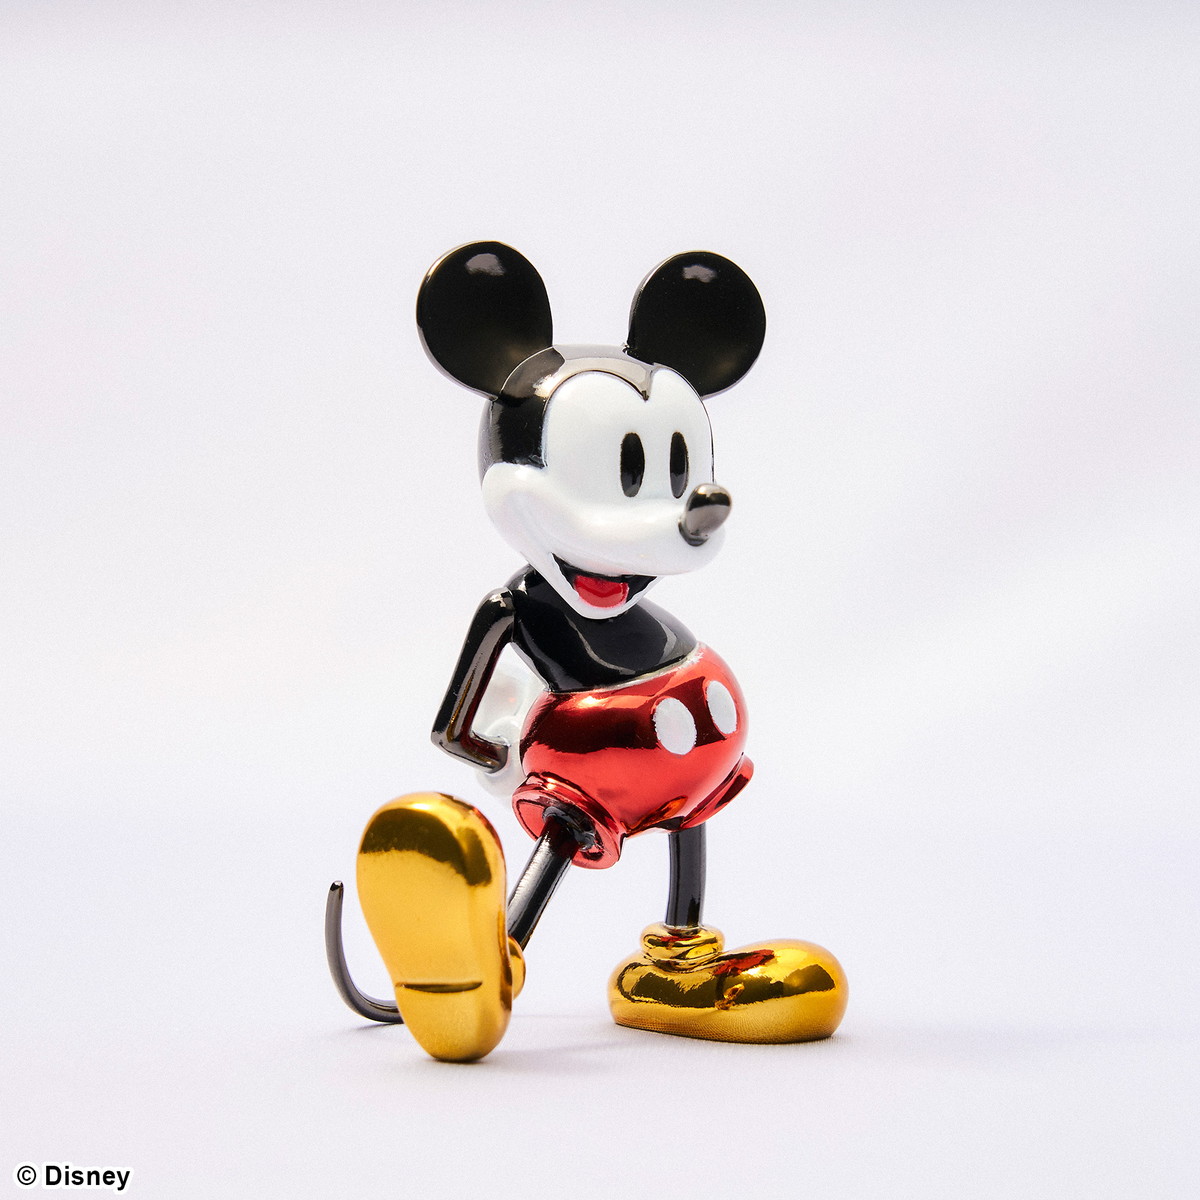 「ディズニー / ブライトアーツギャラリー / ミッキーマウス 1930s」のフィギュア画像